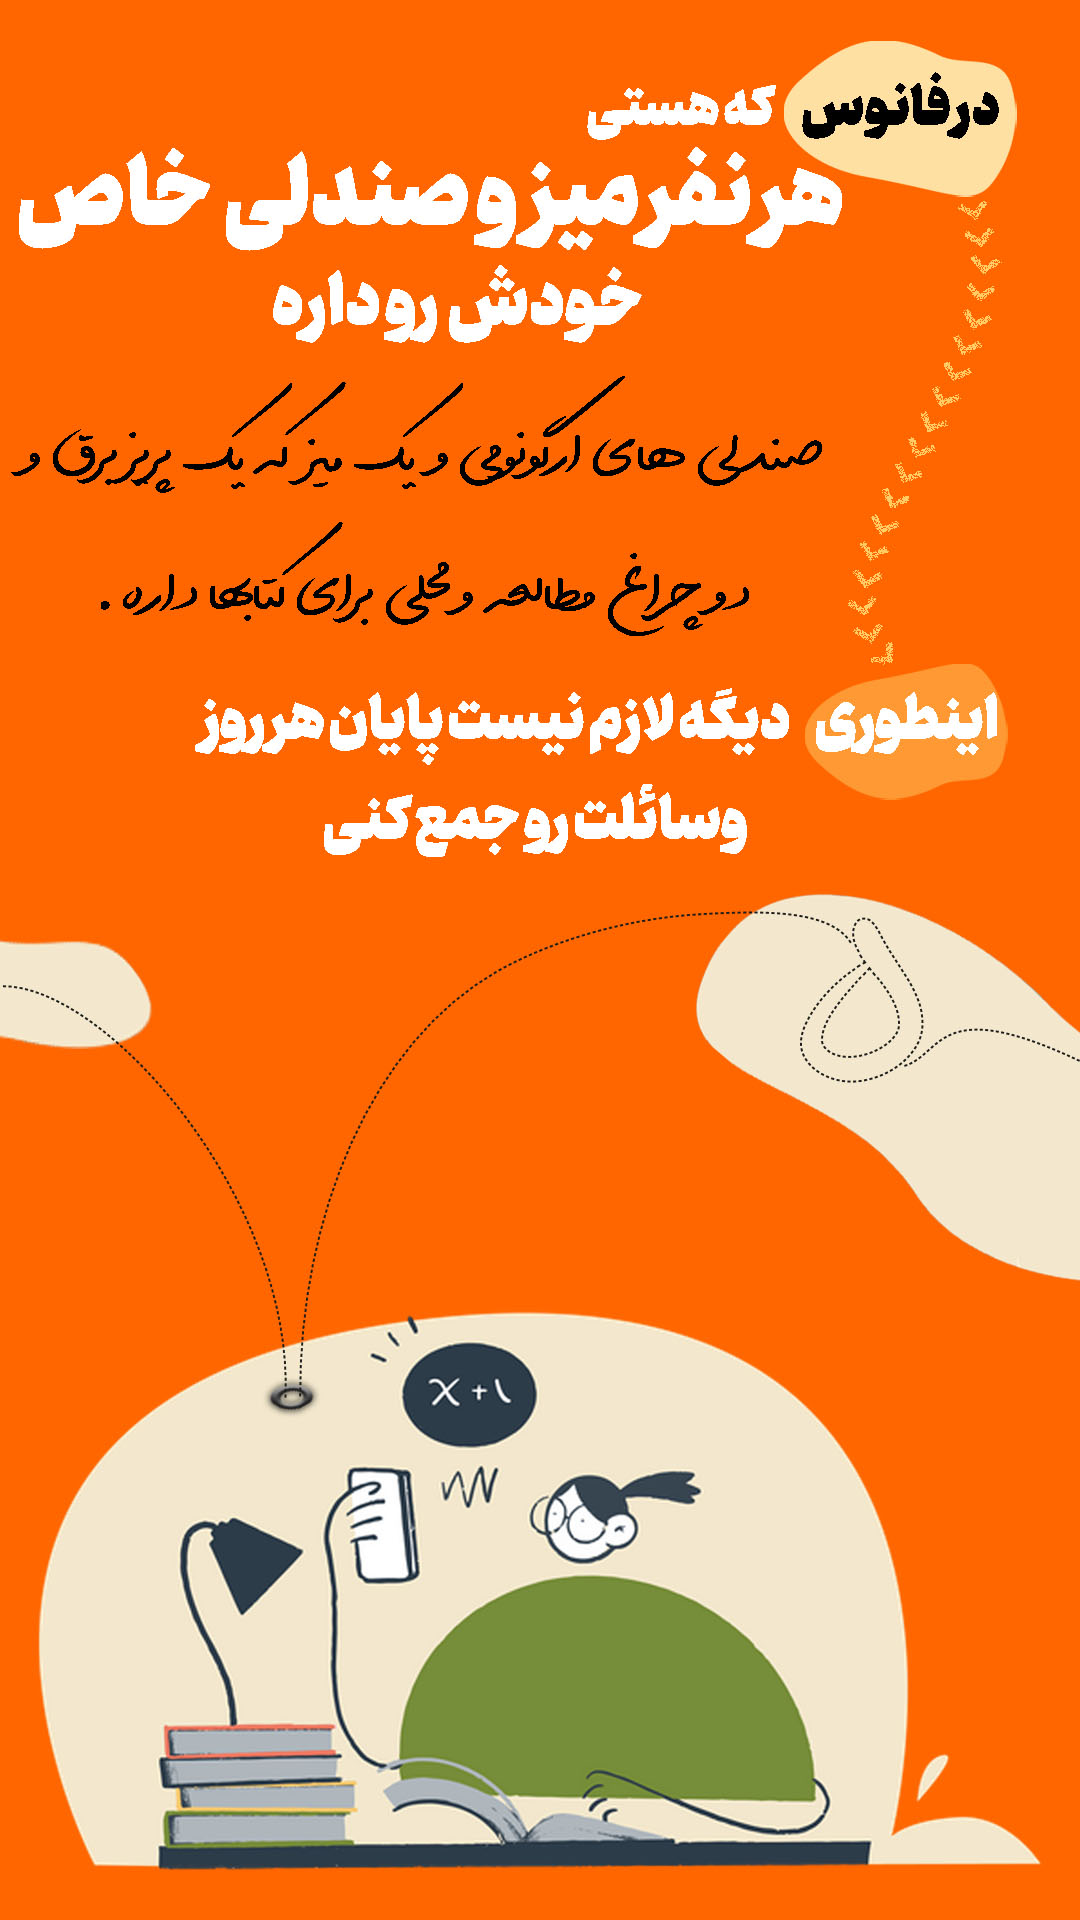 معرفی کمپ مطالعاتی شیراز5